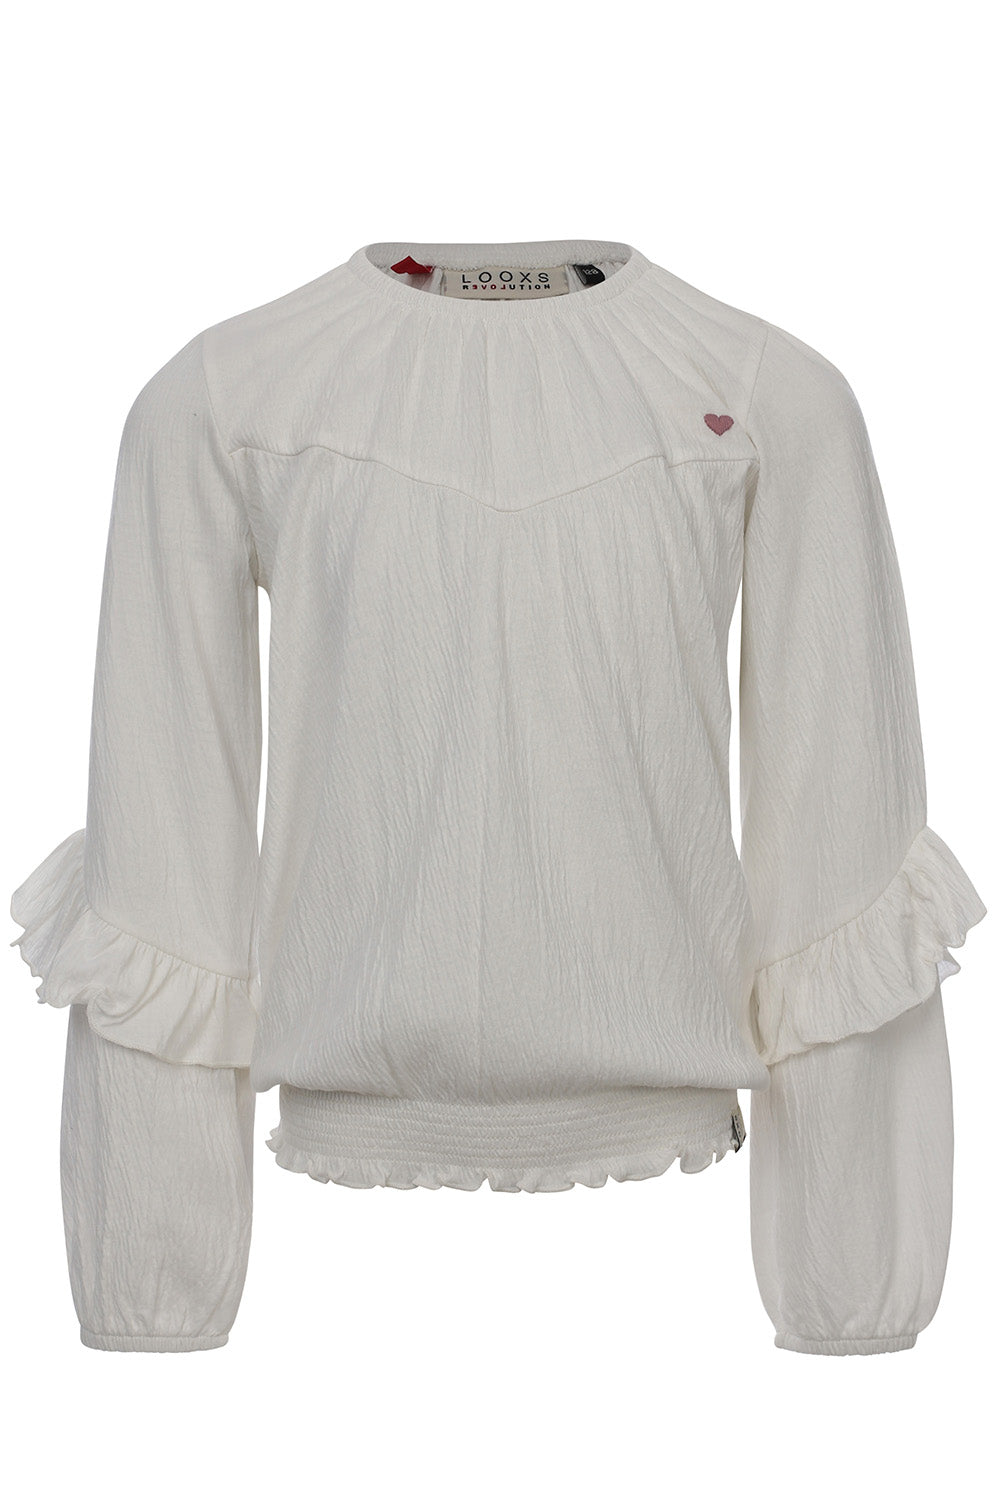 Meisjes Crincle Jersey Top van LOOXS Little in de kleur Soft white in maat 128.